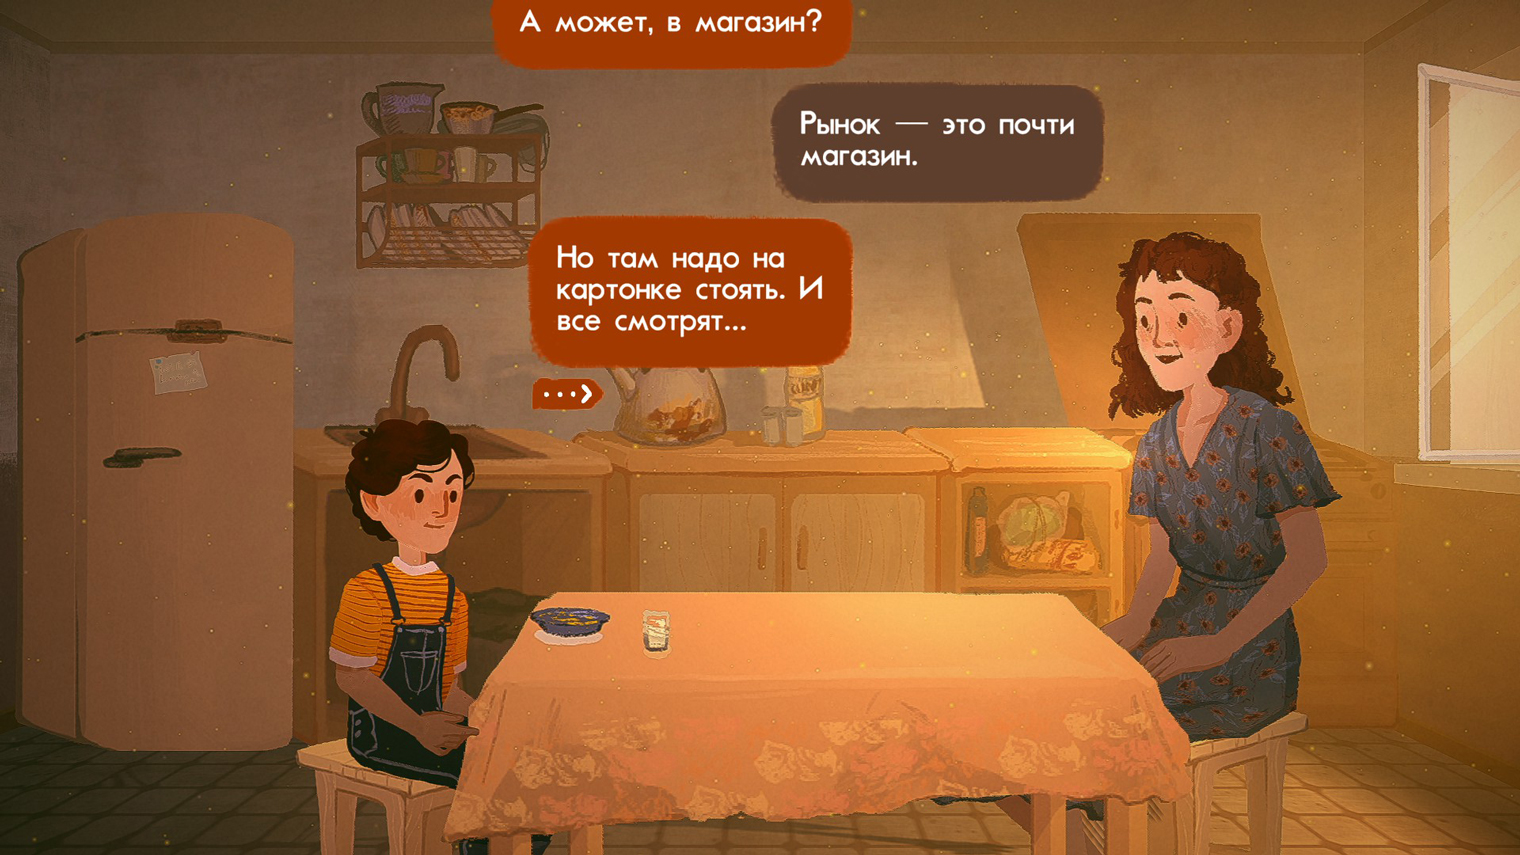 В игре нет озвучки, но реплики персонажей сопровождаются характерными звуками. Например, мама Саши журчит ручейком